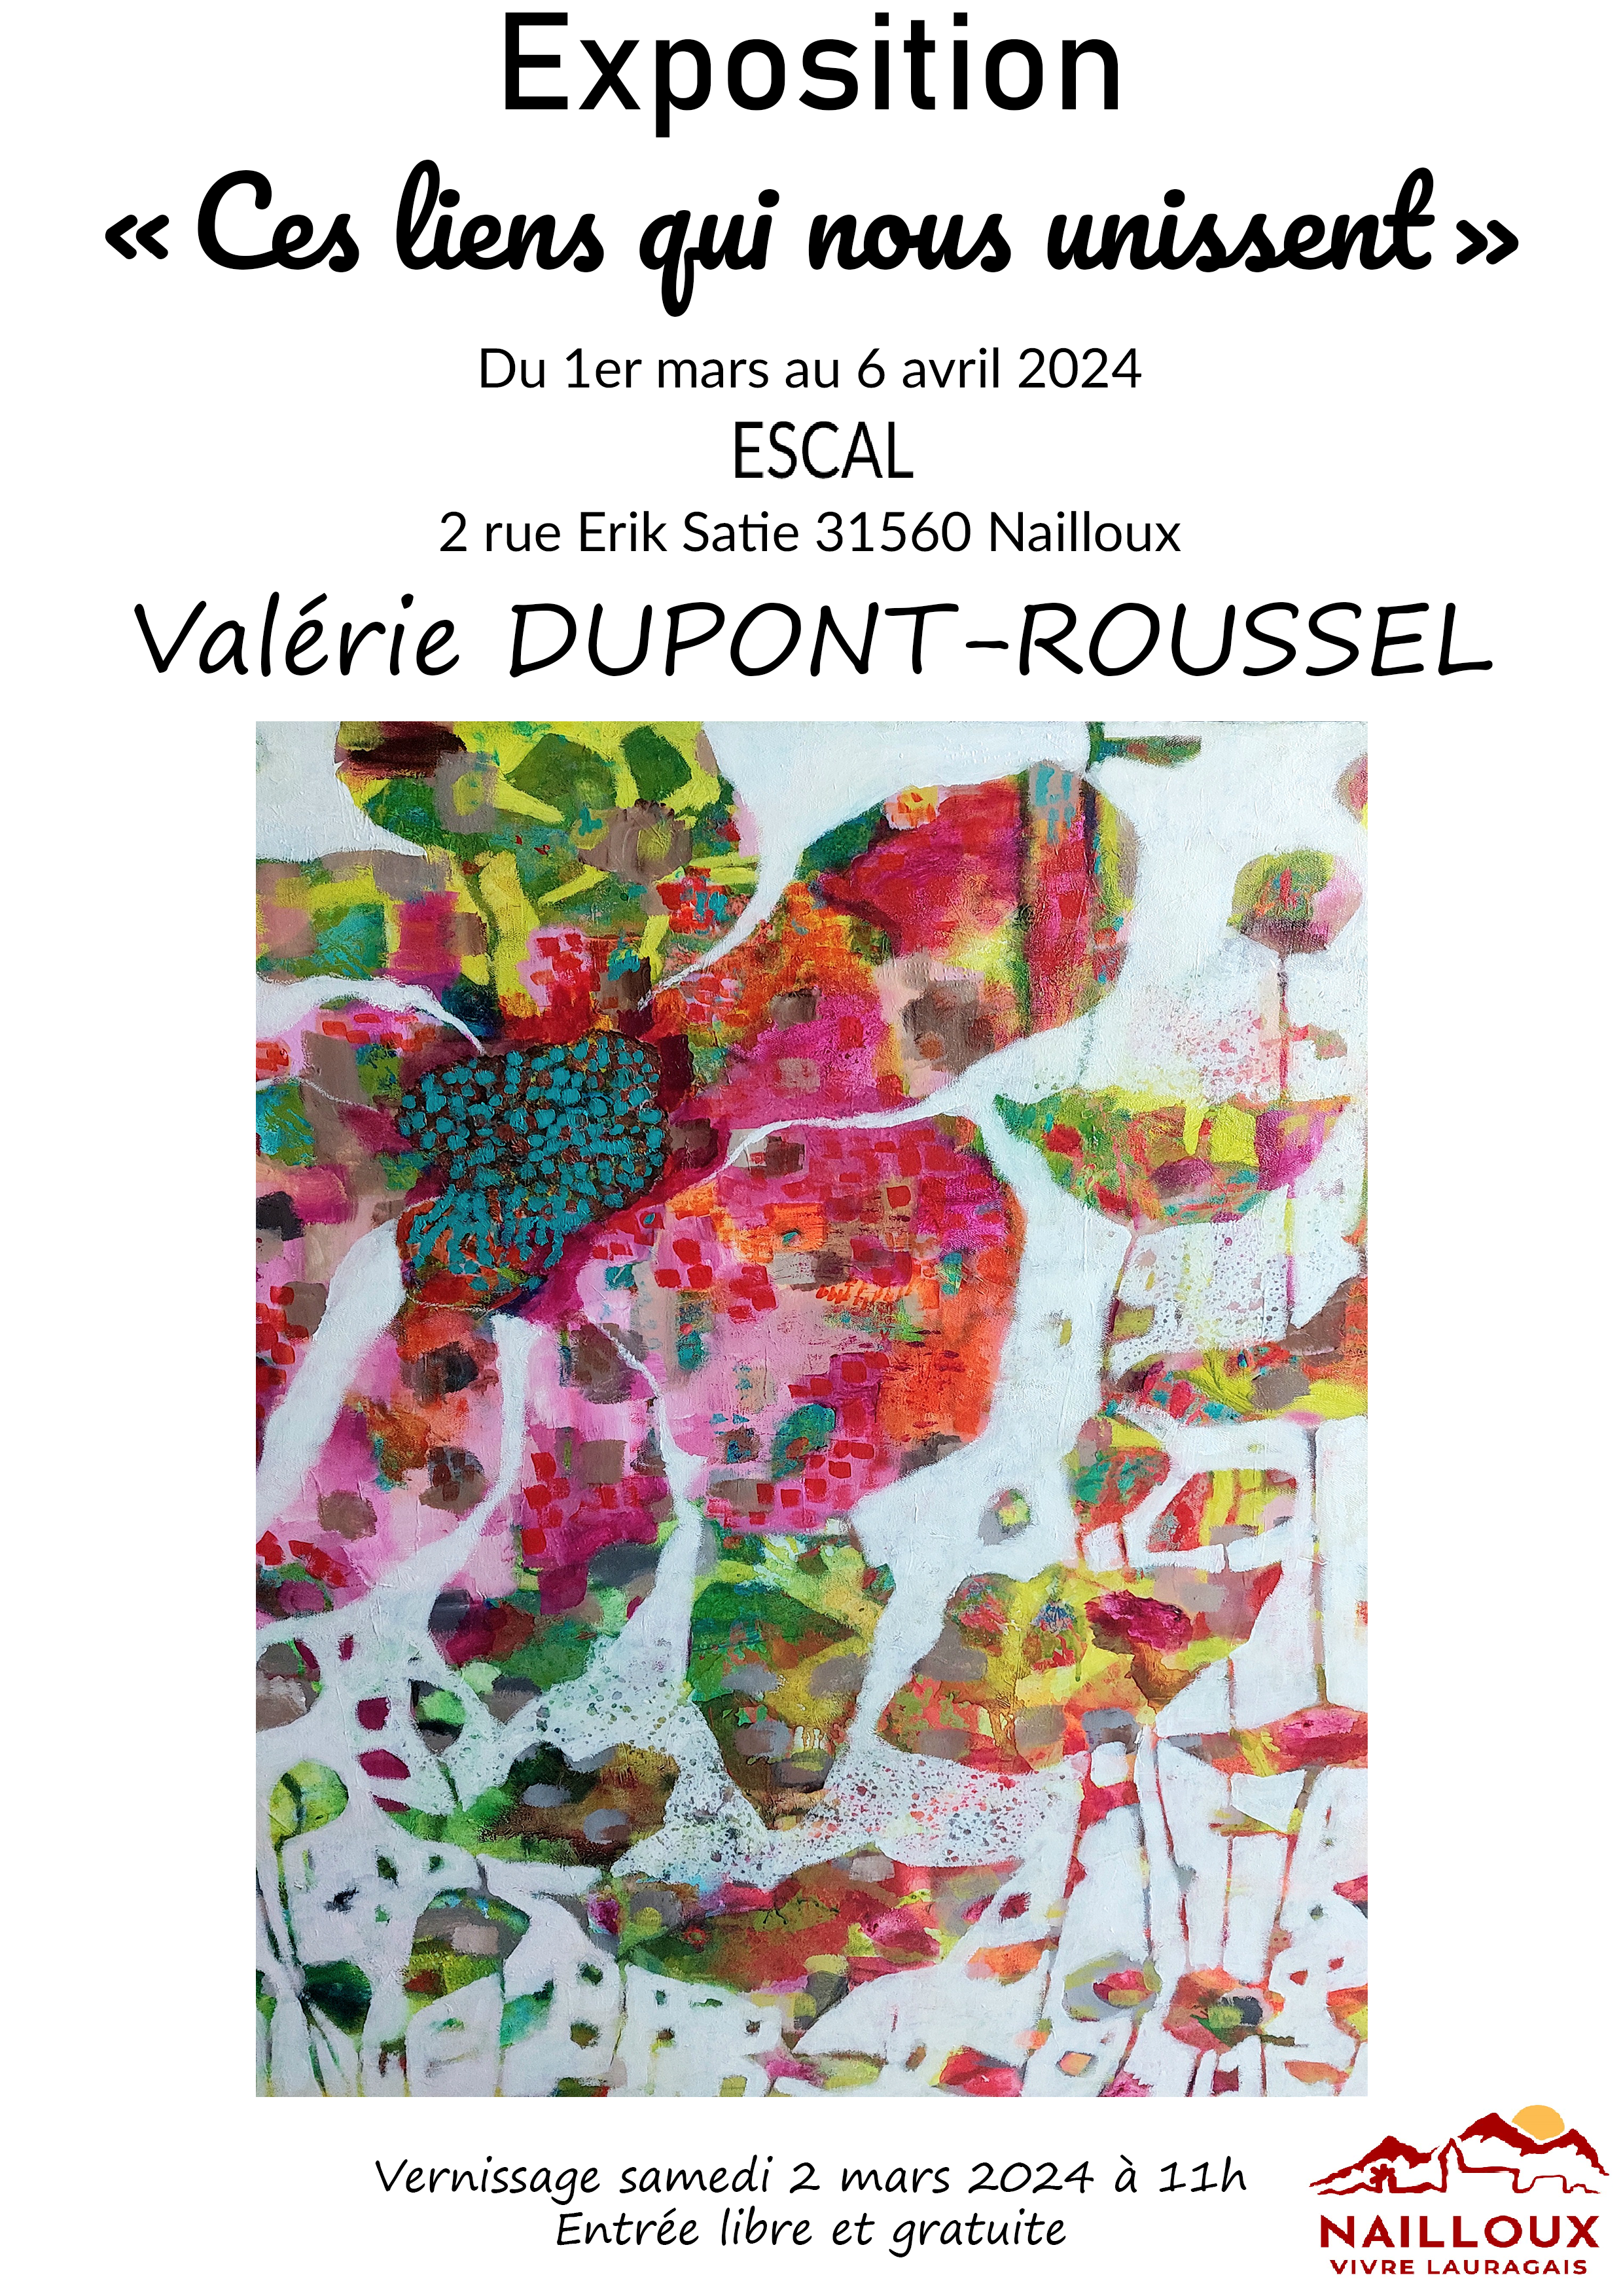 Exposition : "Ces liens qui nous unissent" par Valérie Dupont-Roussel